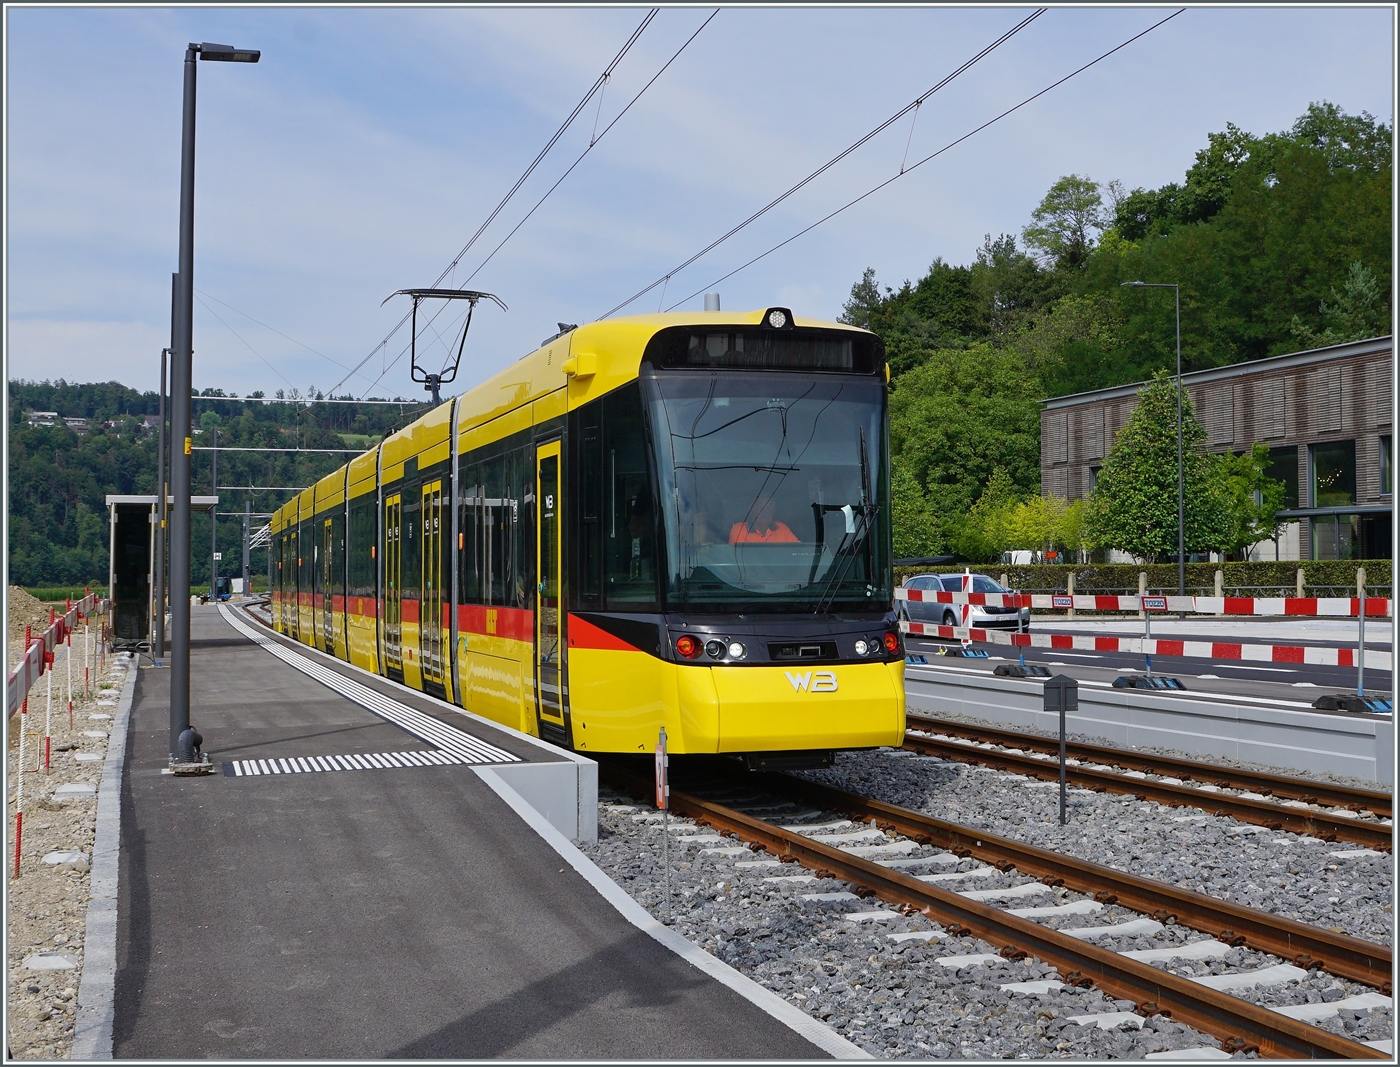 Der neue Waldenburgerbahn WB Be 6/8 101 auf Testfahrt wartet auf den neu verlegten Meterspurgeleisen in Bubendorf Bad auf die Weiterfahrt. Durch die Umspurung von 75 cm auf Meterspur erhlt das  Waldenburgeli  ein ganz neuen Charakter.

30. August 2022